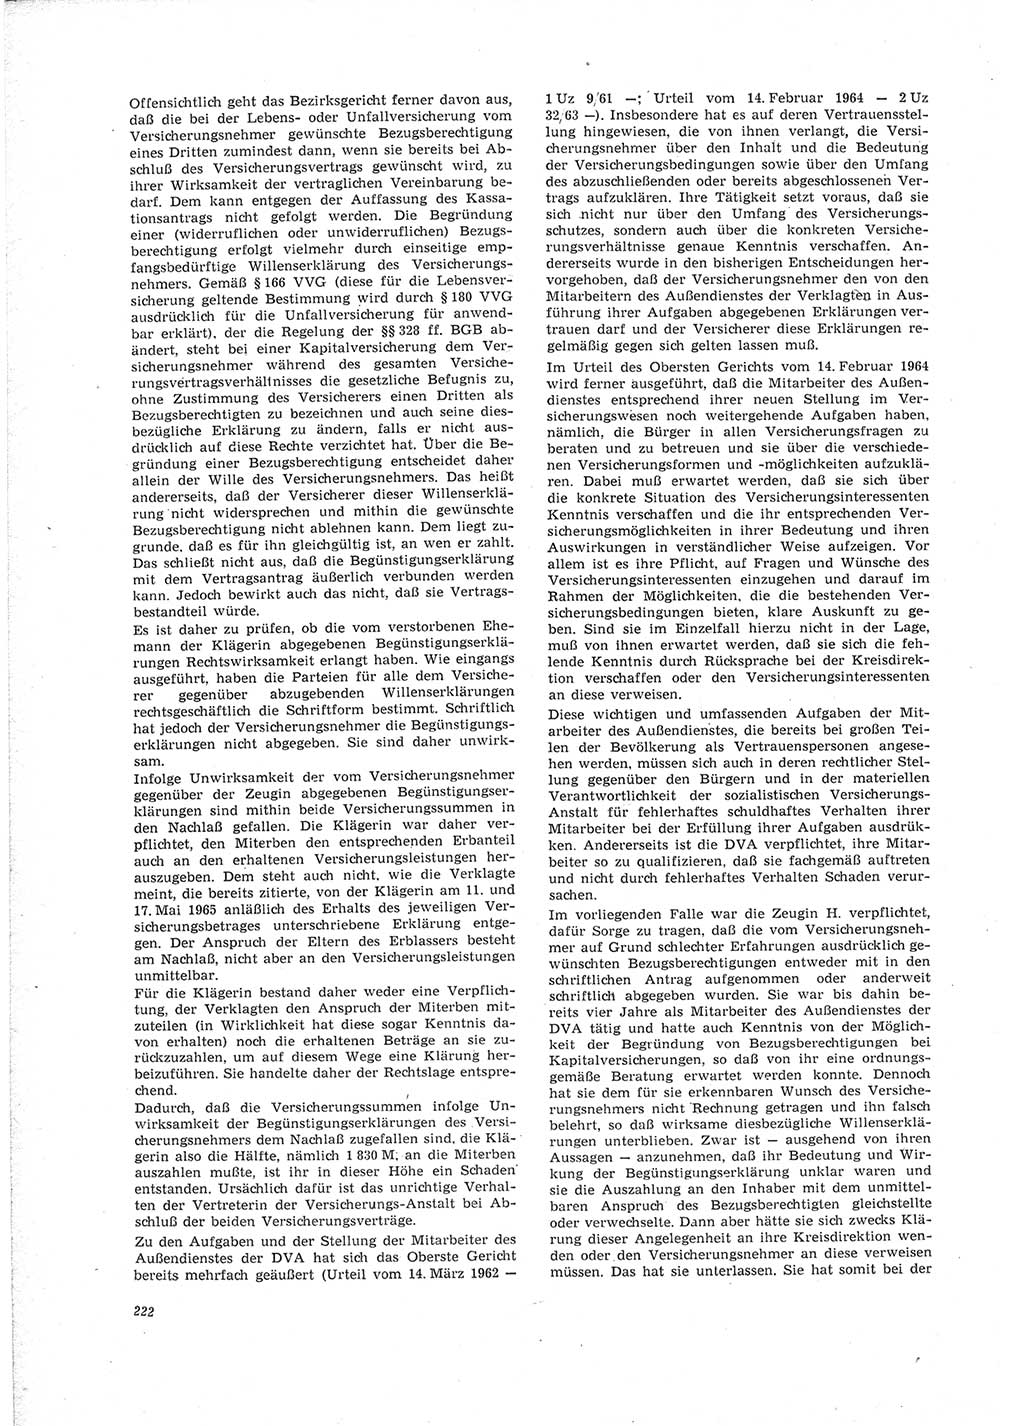 Neue Justiz (NJ), Zeitschrift für Recht und Rechtswissenschaft [Deutsche Demokratische Republik (DDR)], 23. Jahrgang 1969, Seite 222 (NJ DDR 1969, S. 222)